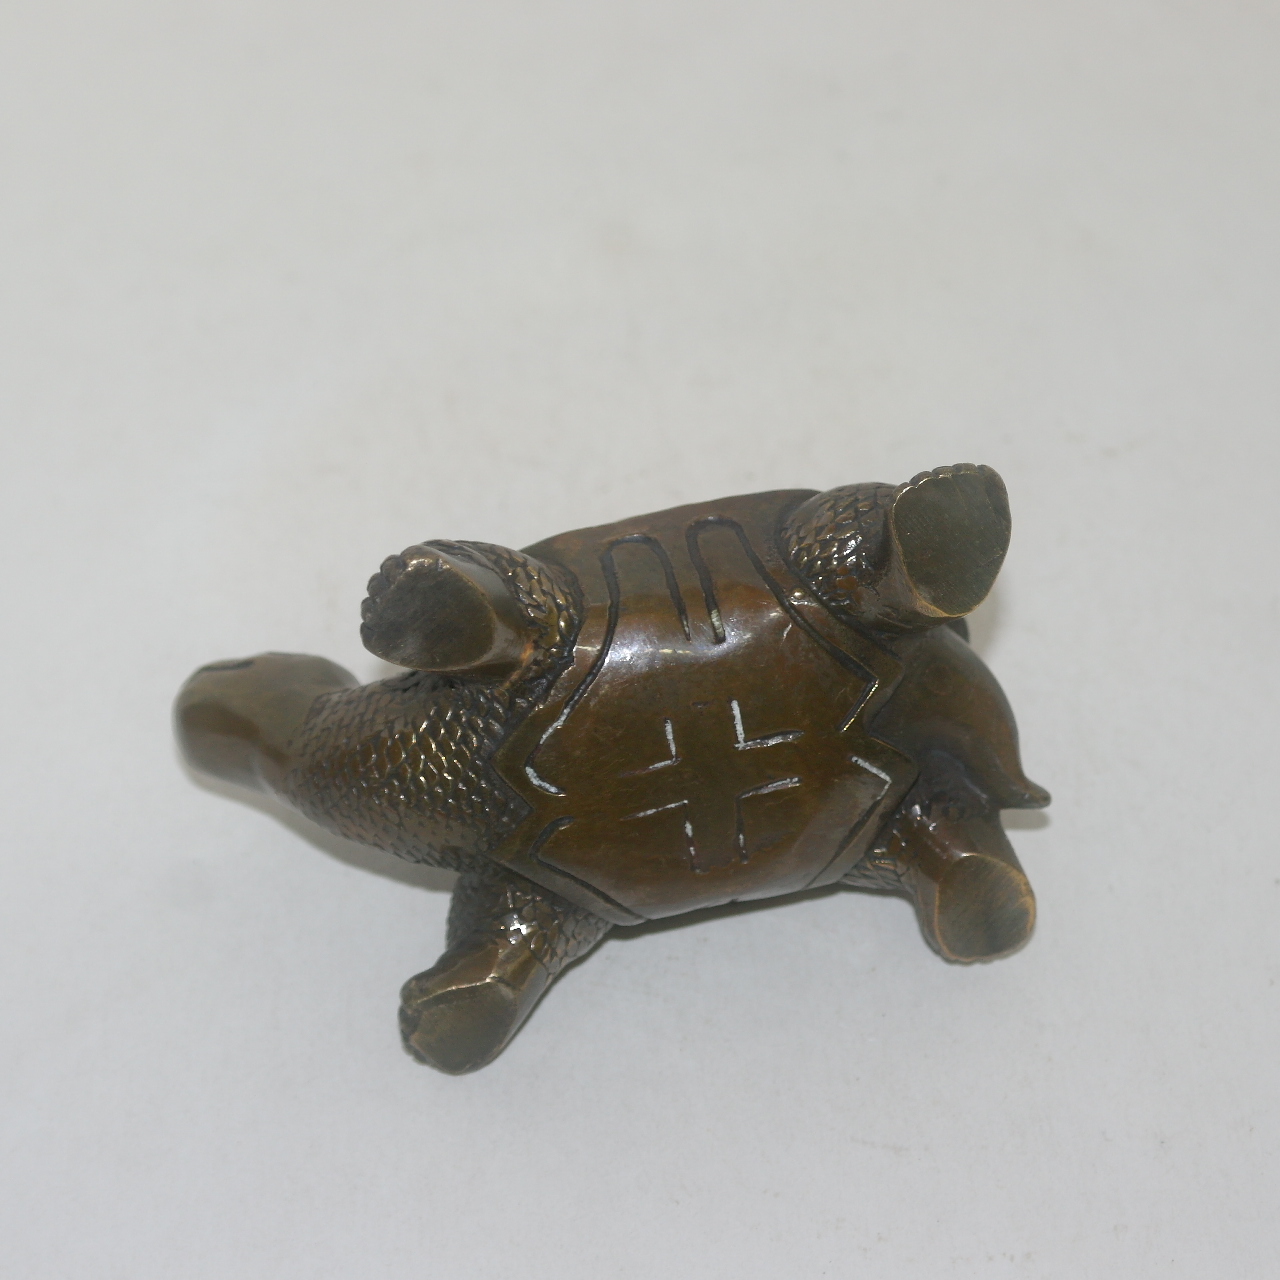 청동으로된 거북이 조각상